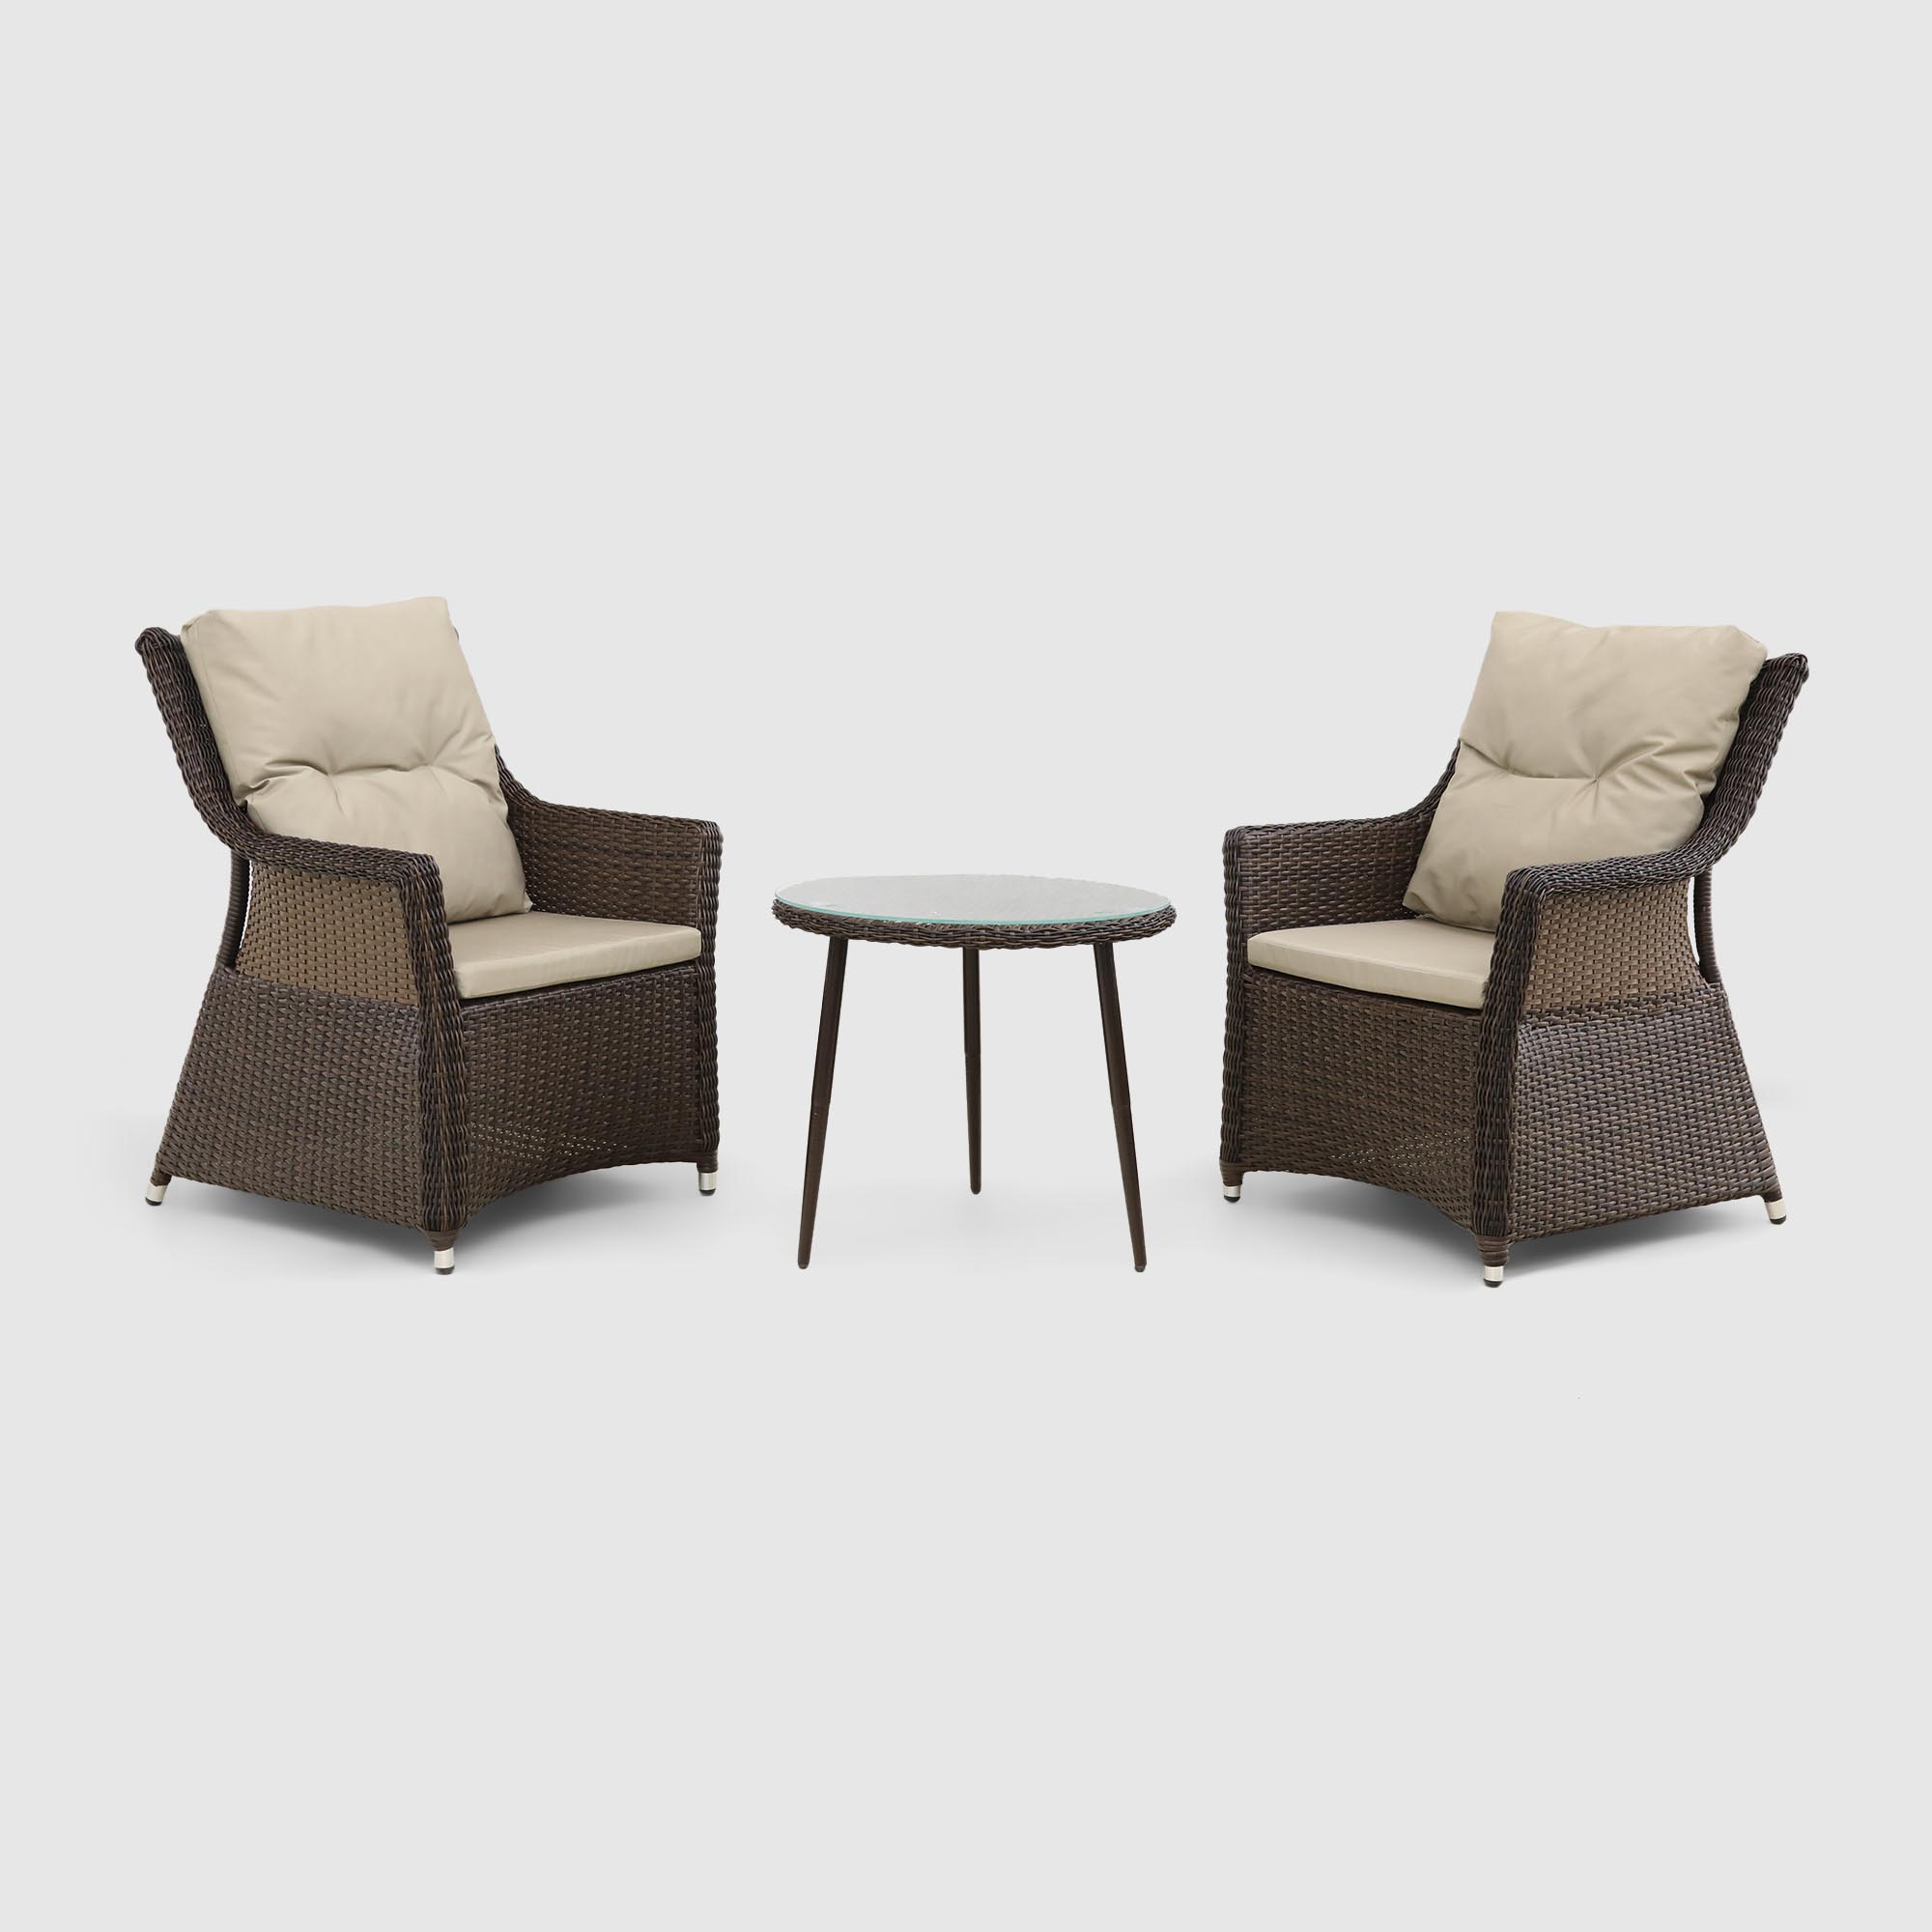 Комплект мебели Ns Rattan 2 кресла и столик очная композиция южный загар смесь окрасок